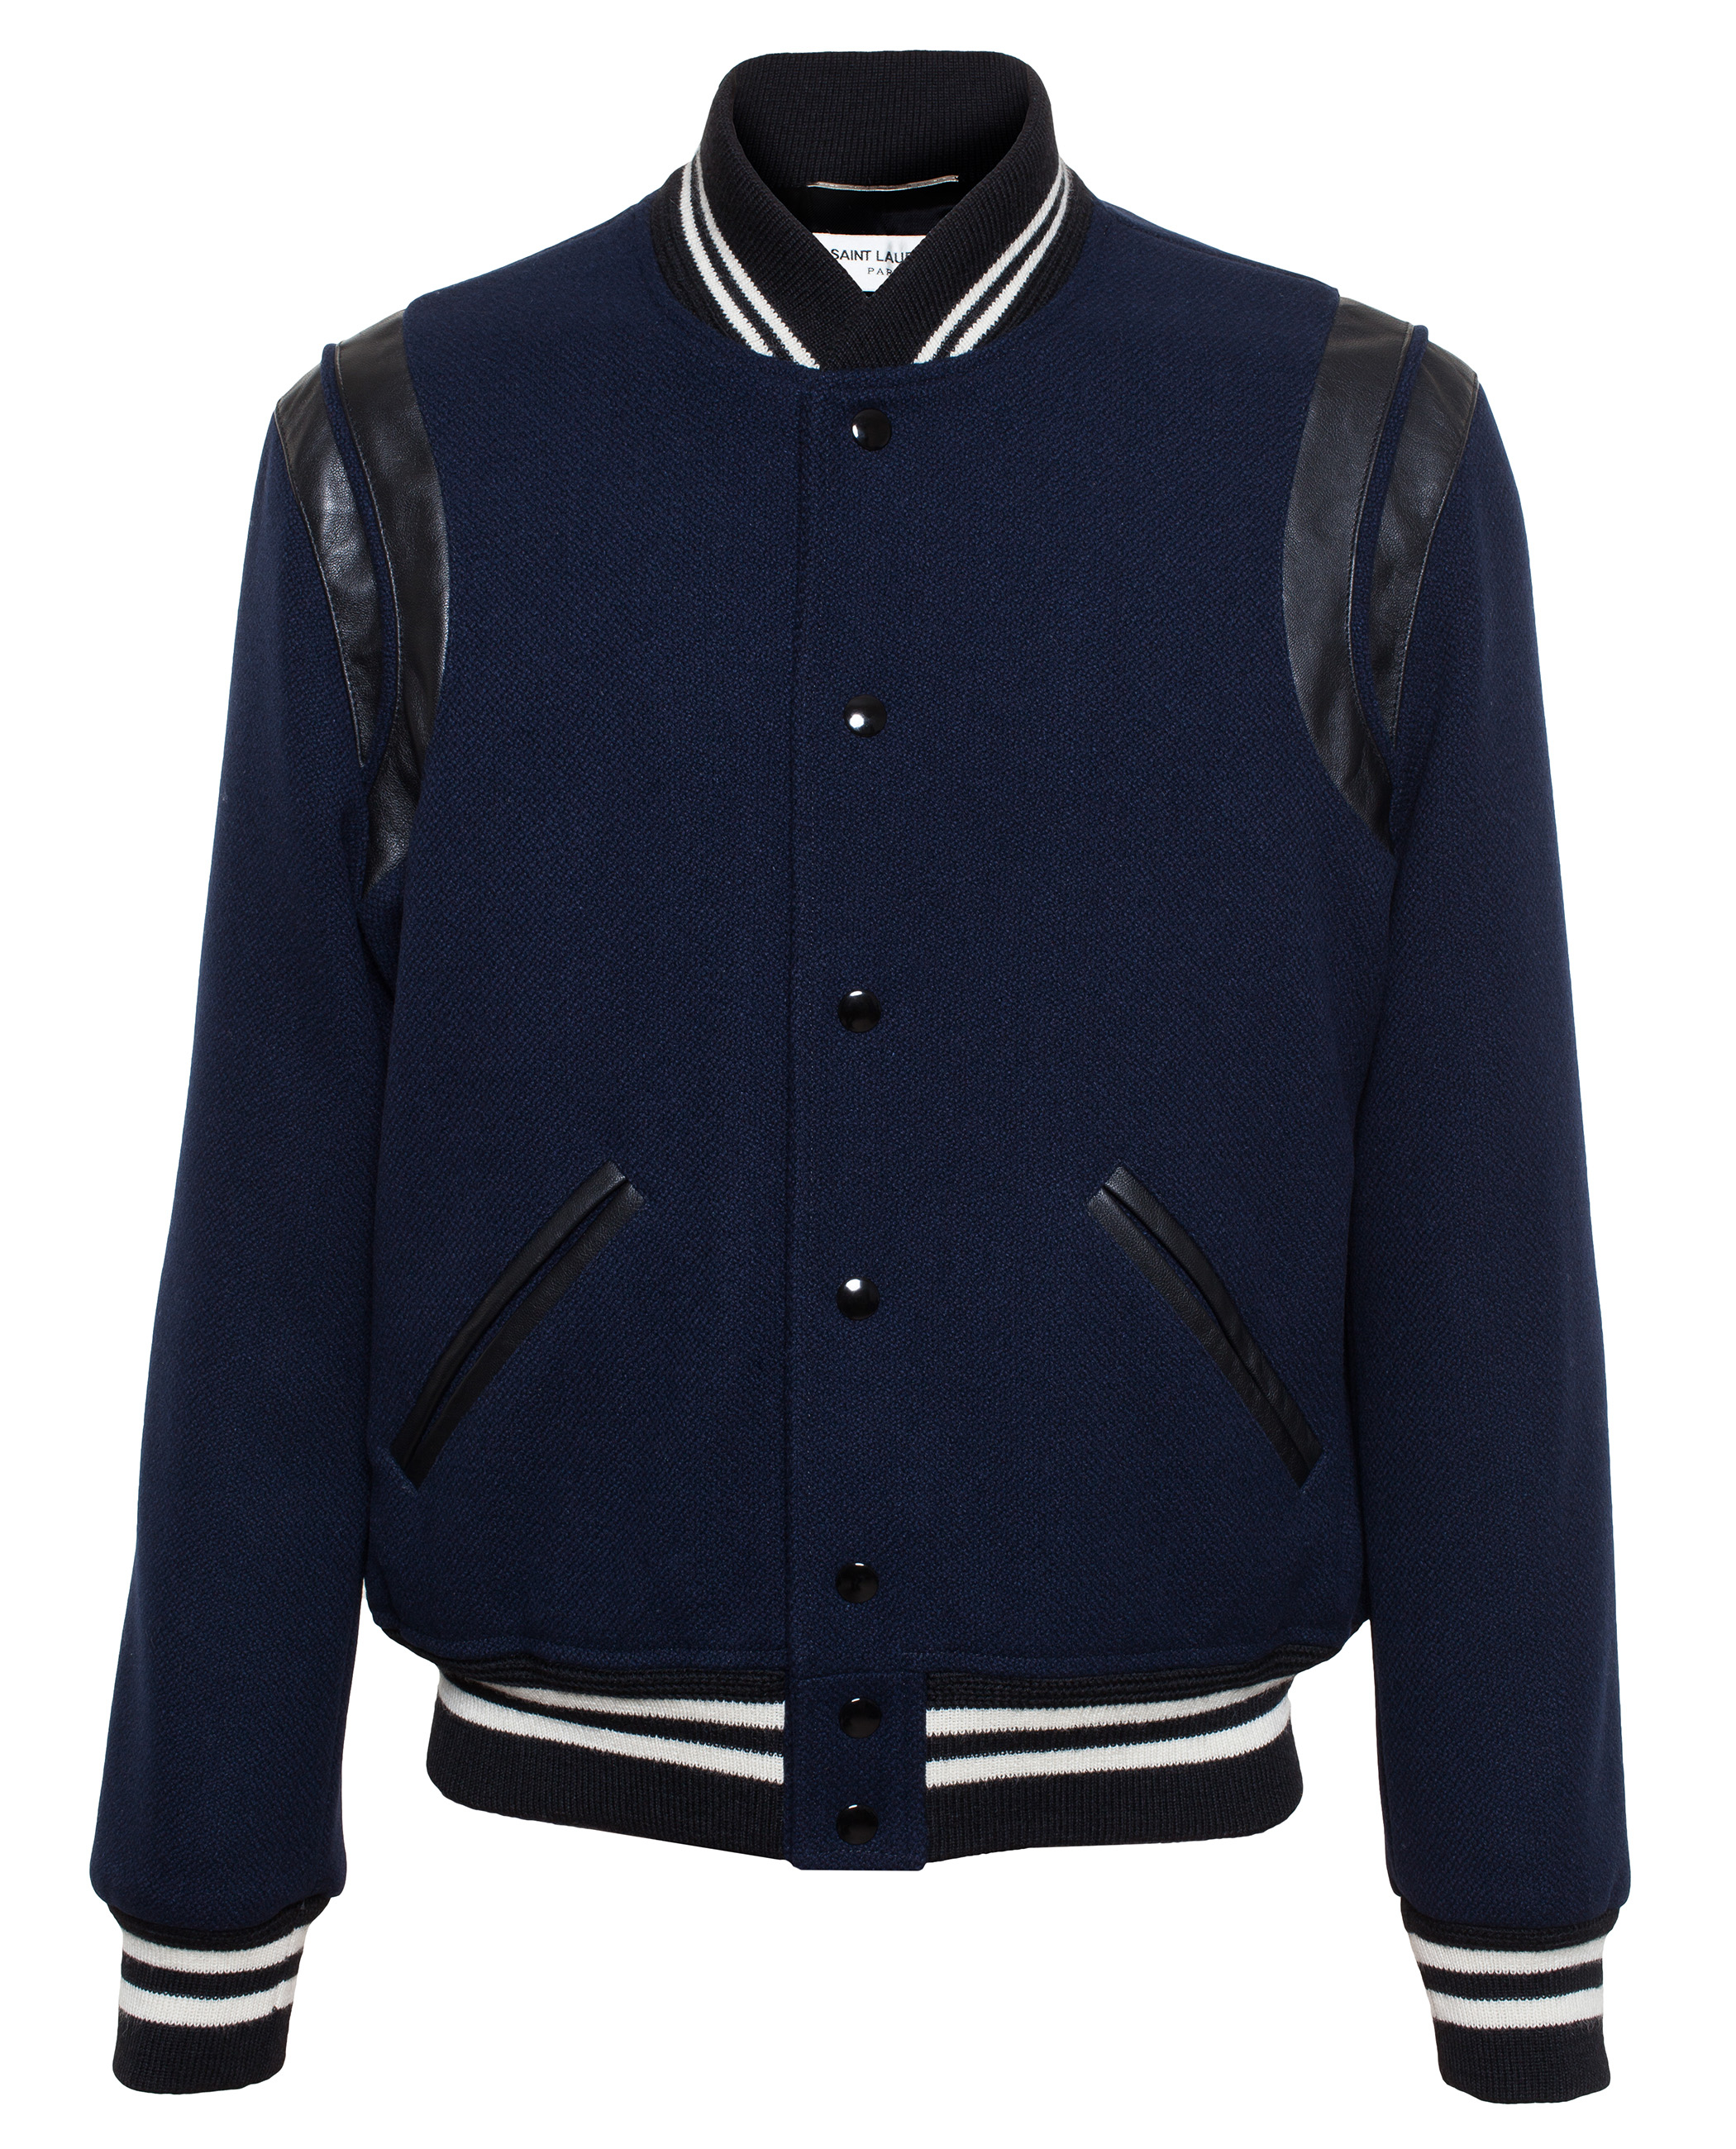 Saint Laurent Virgin Wool Teddy Boy Jacket in Blue for Men - Lyst